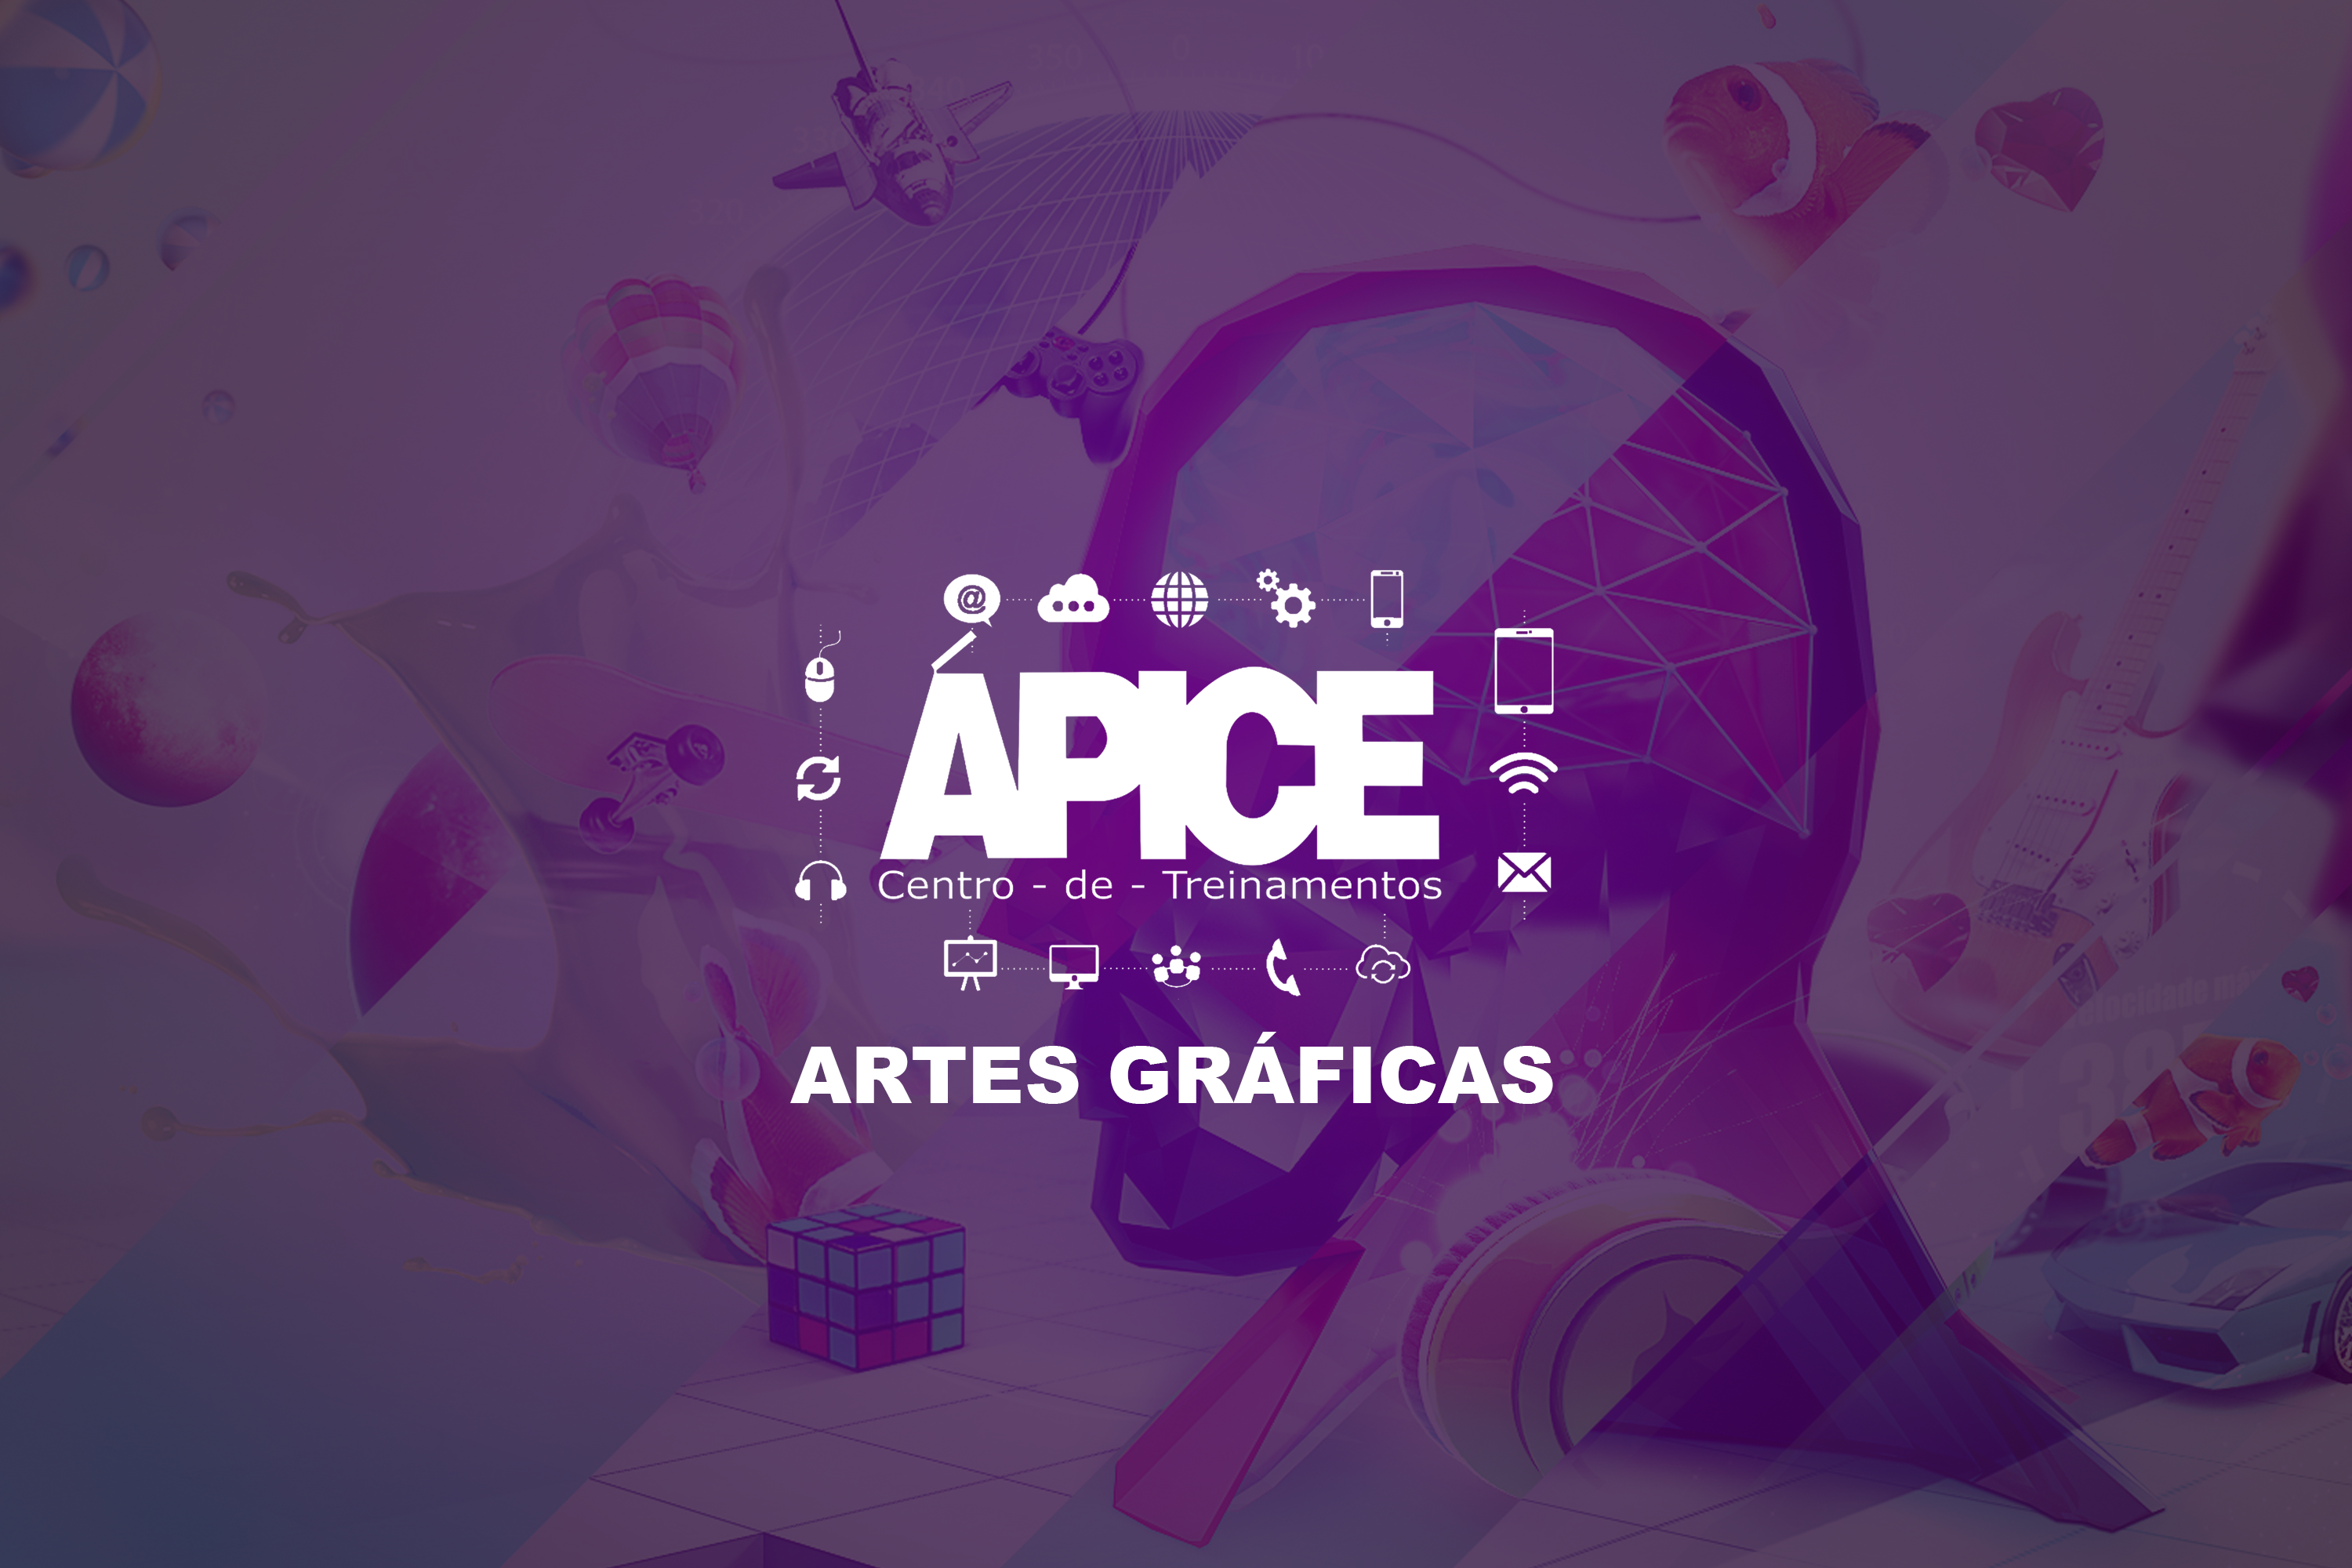 Artes Gráficas (QUI 13:00) - 2023/PA